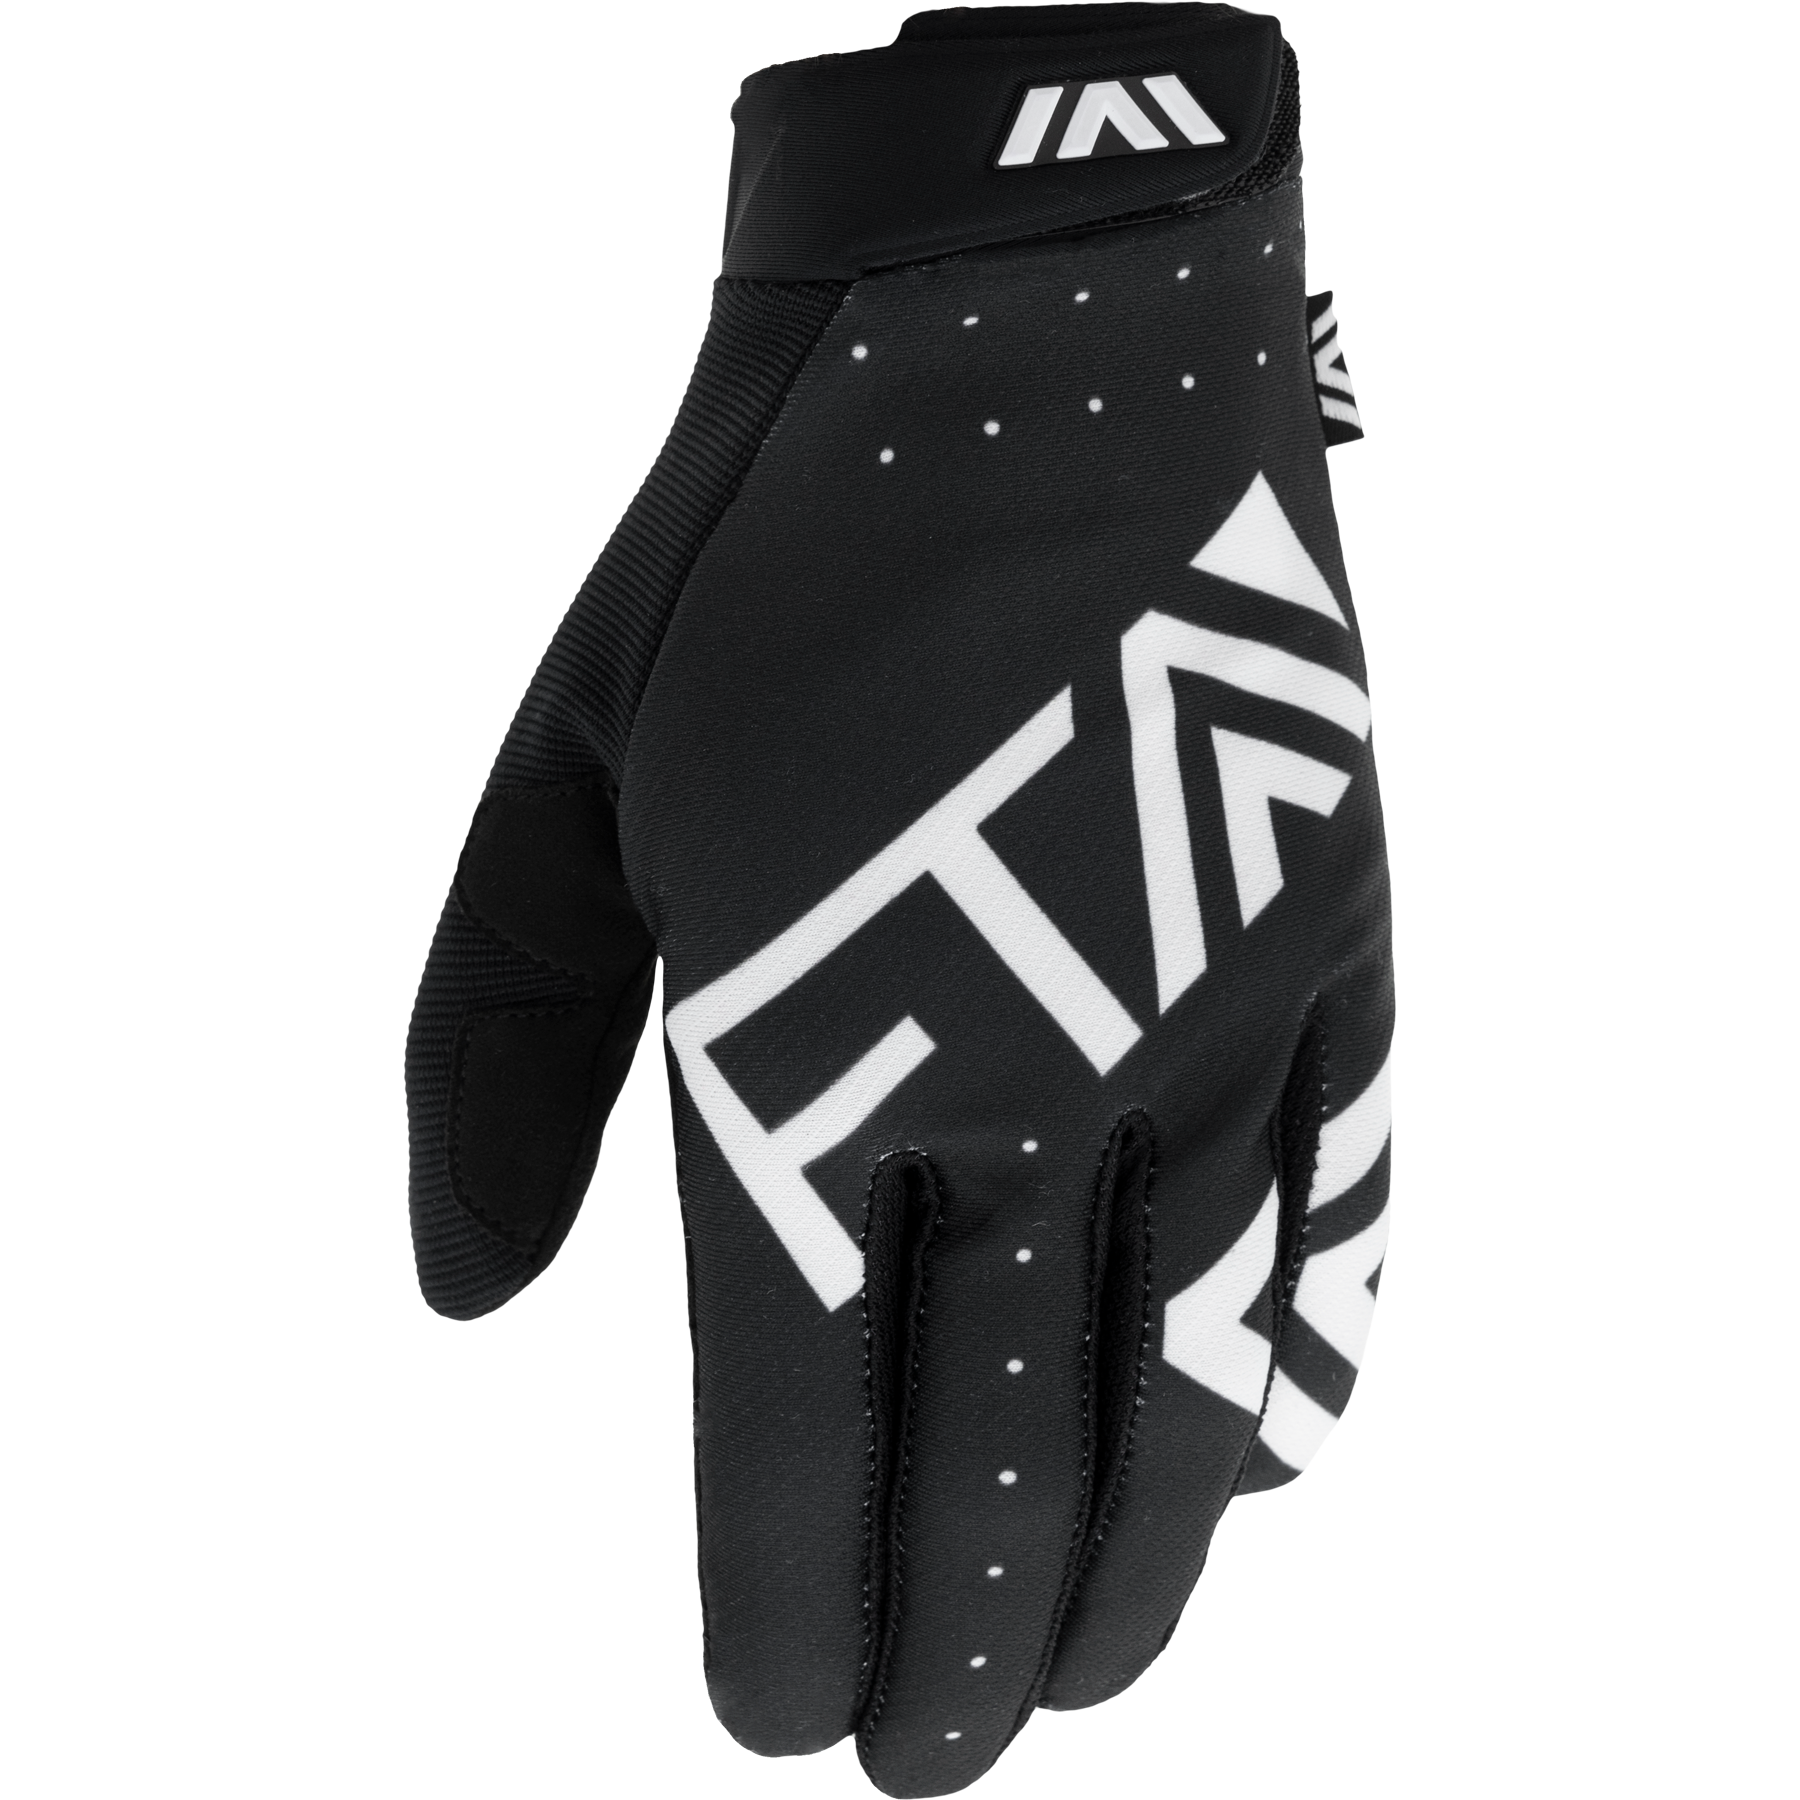 FTA STYLZ Glove Black/White